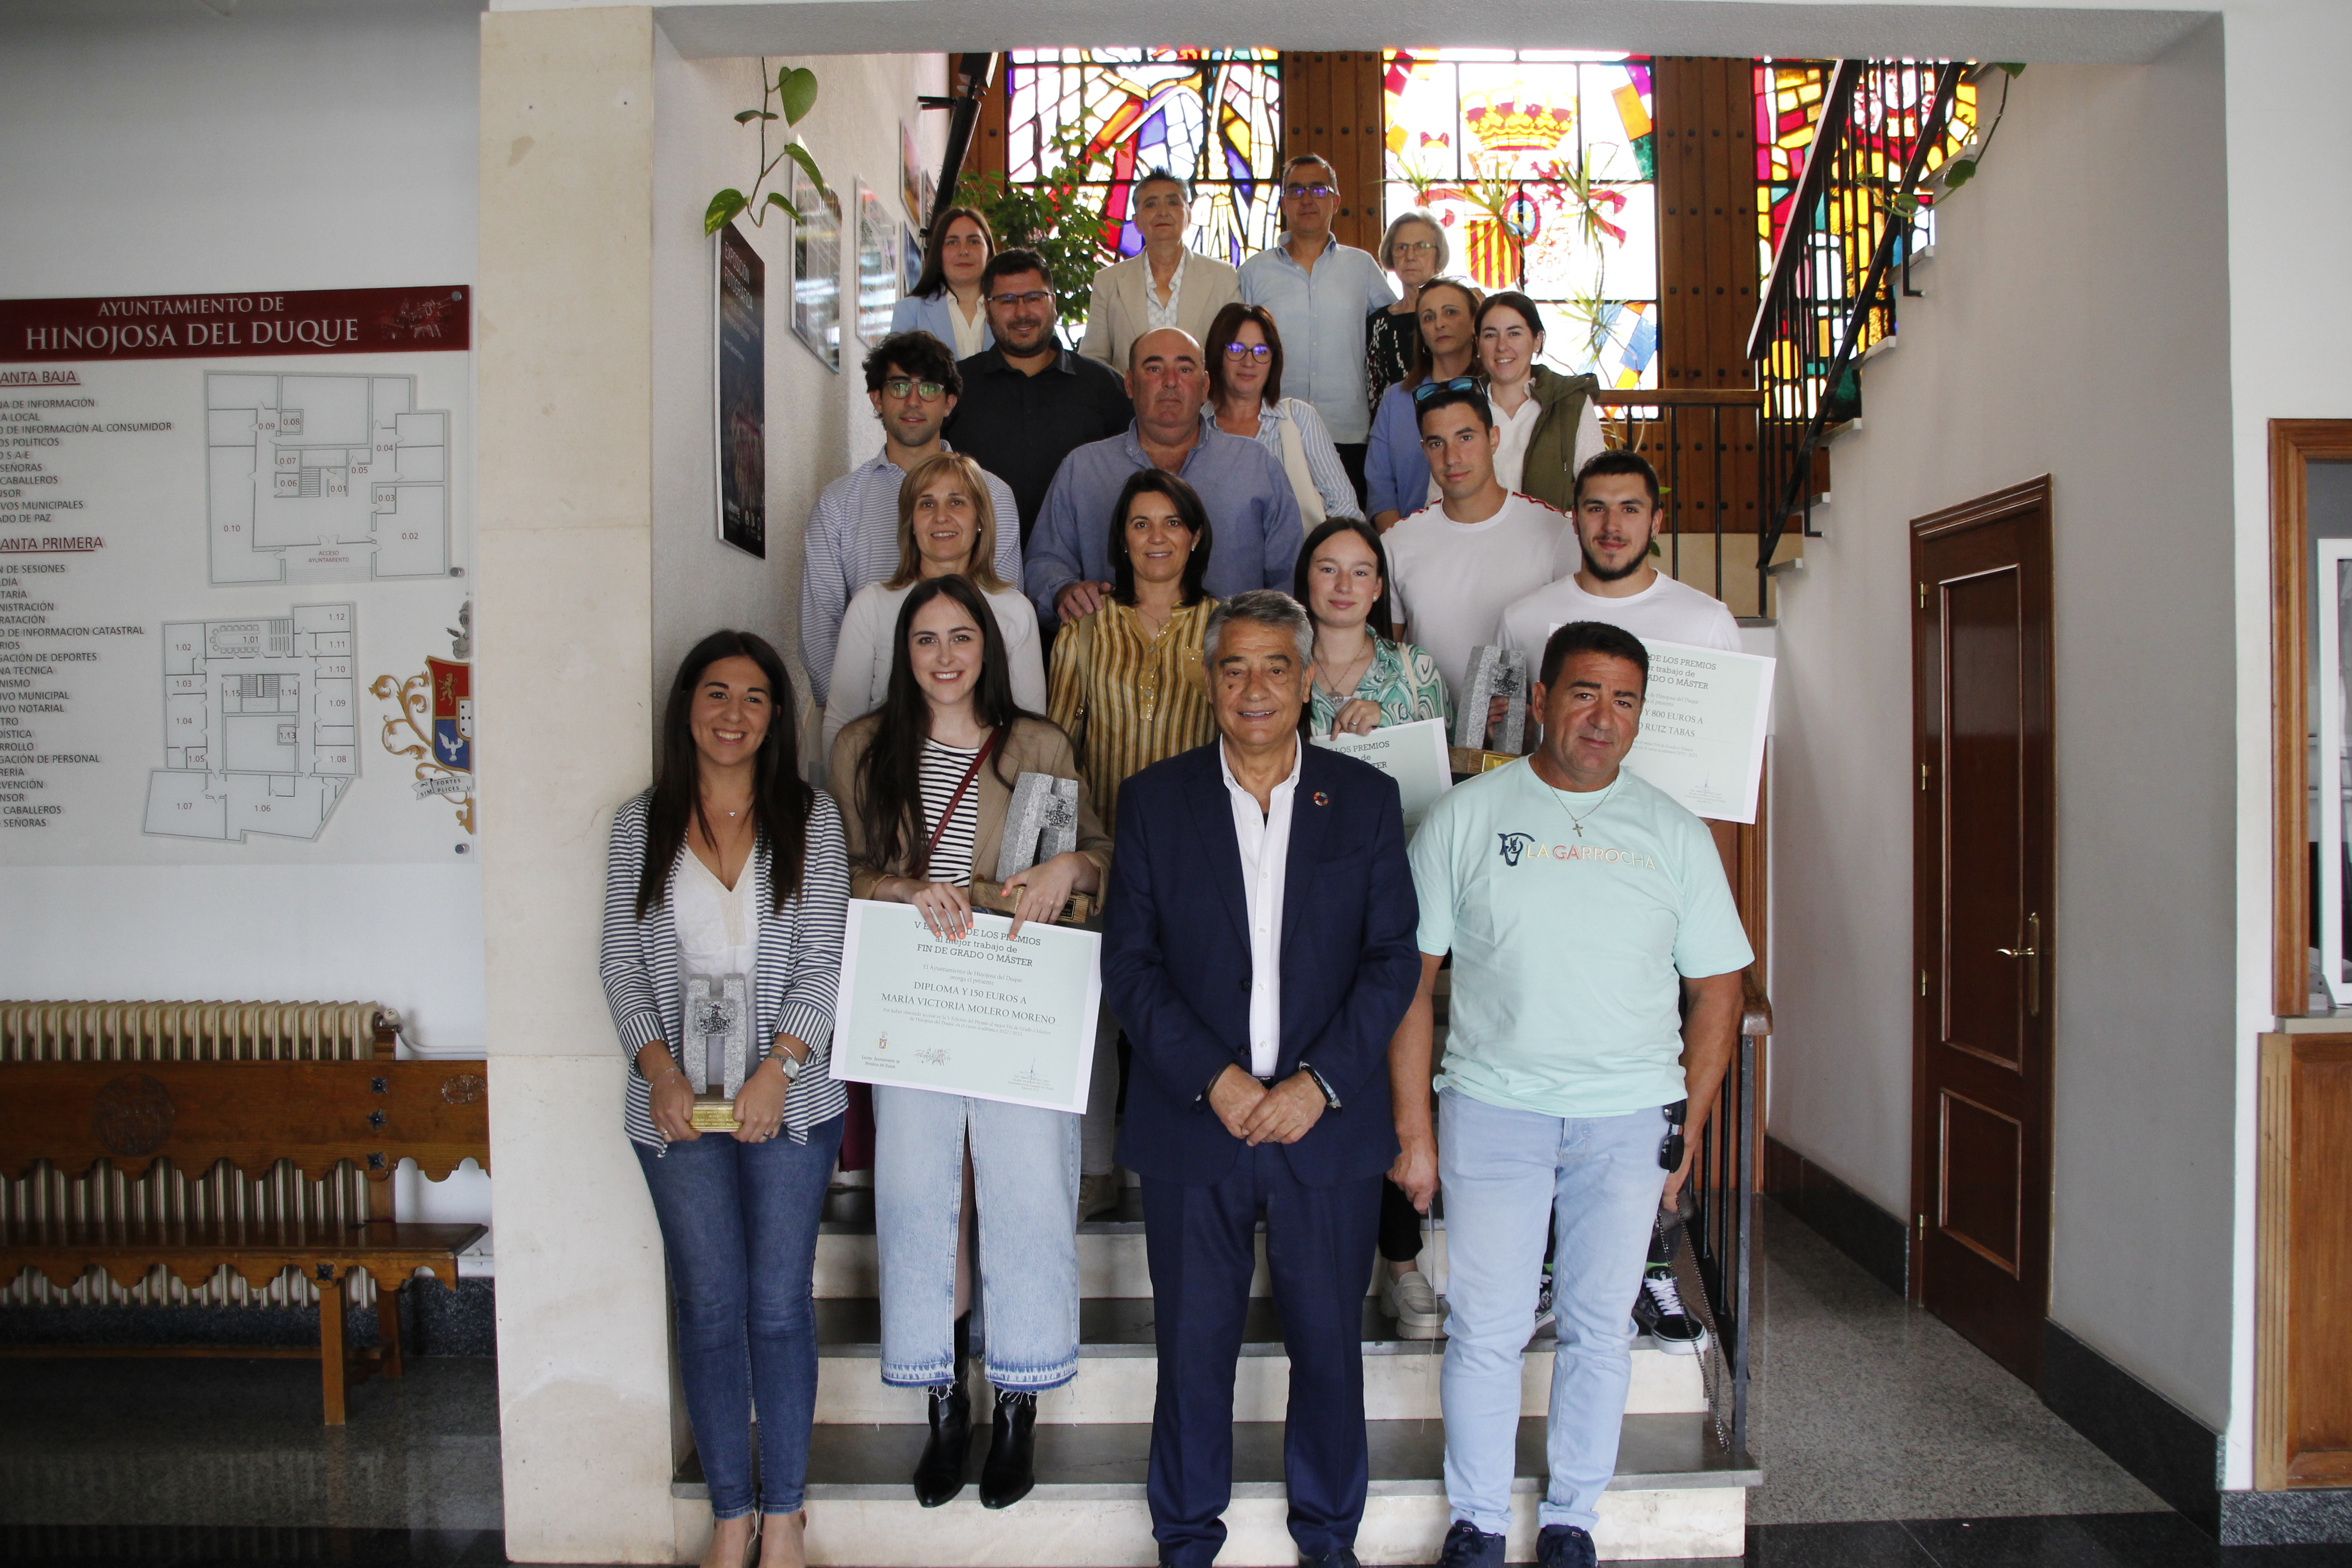 El Ayuntamiento de Hinojosa del Duque ha acogido el acto de entrega de los premios al Mejor Trabajo Fin de Grado Máster